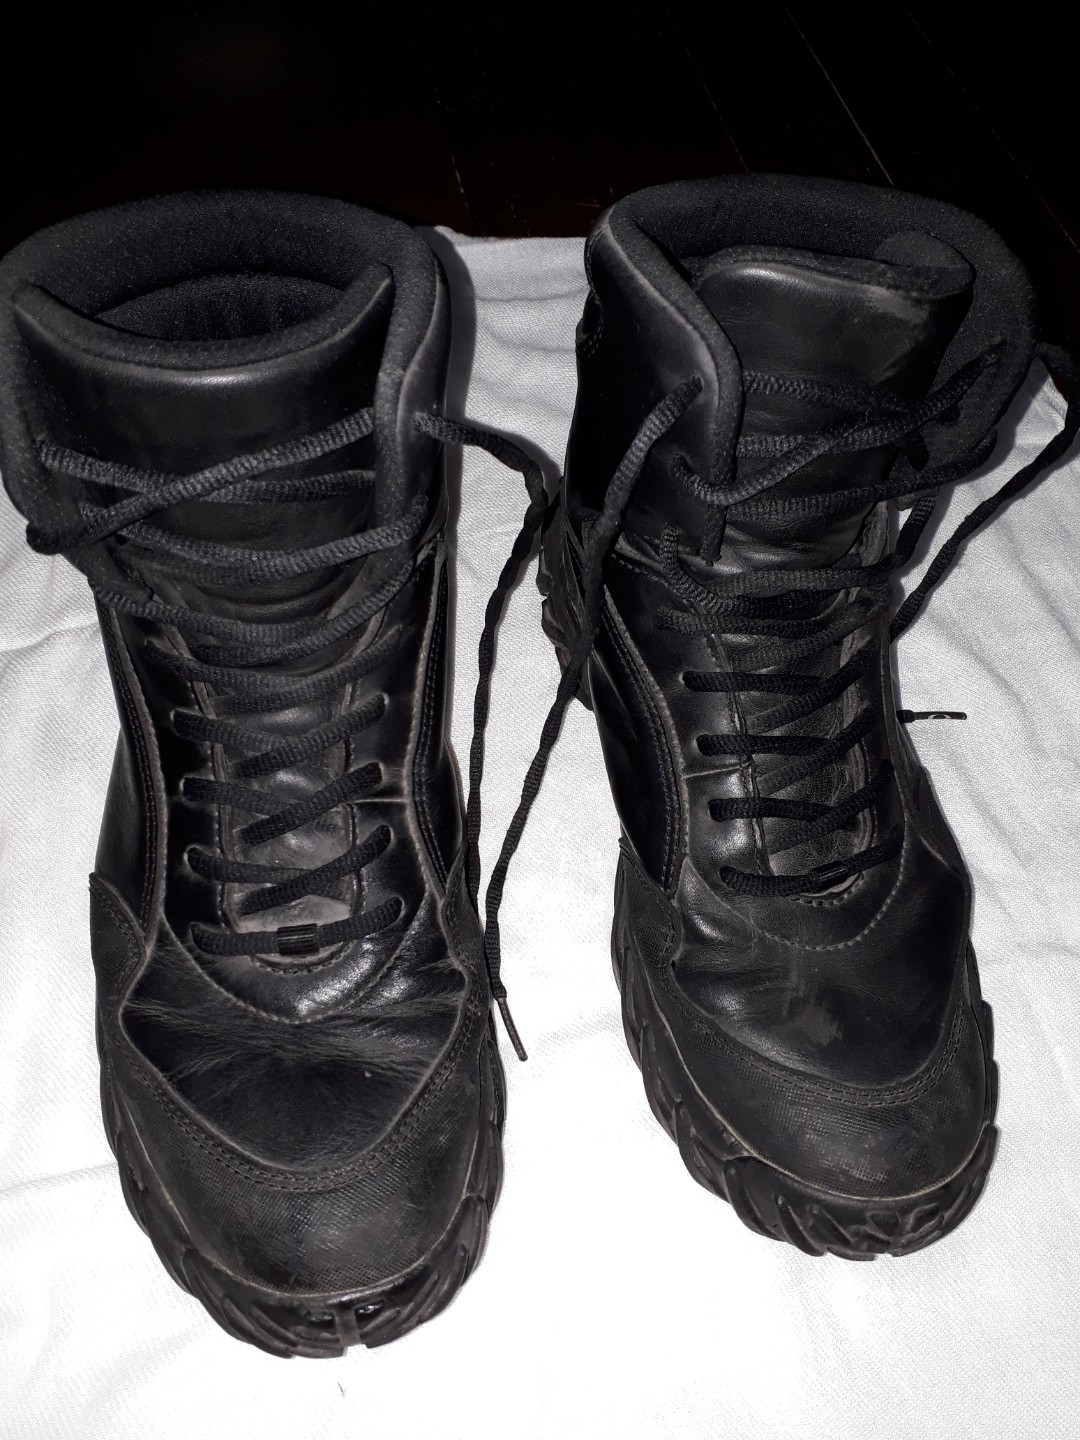 oakley law enforcement boots